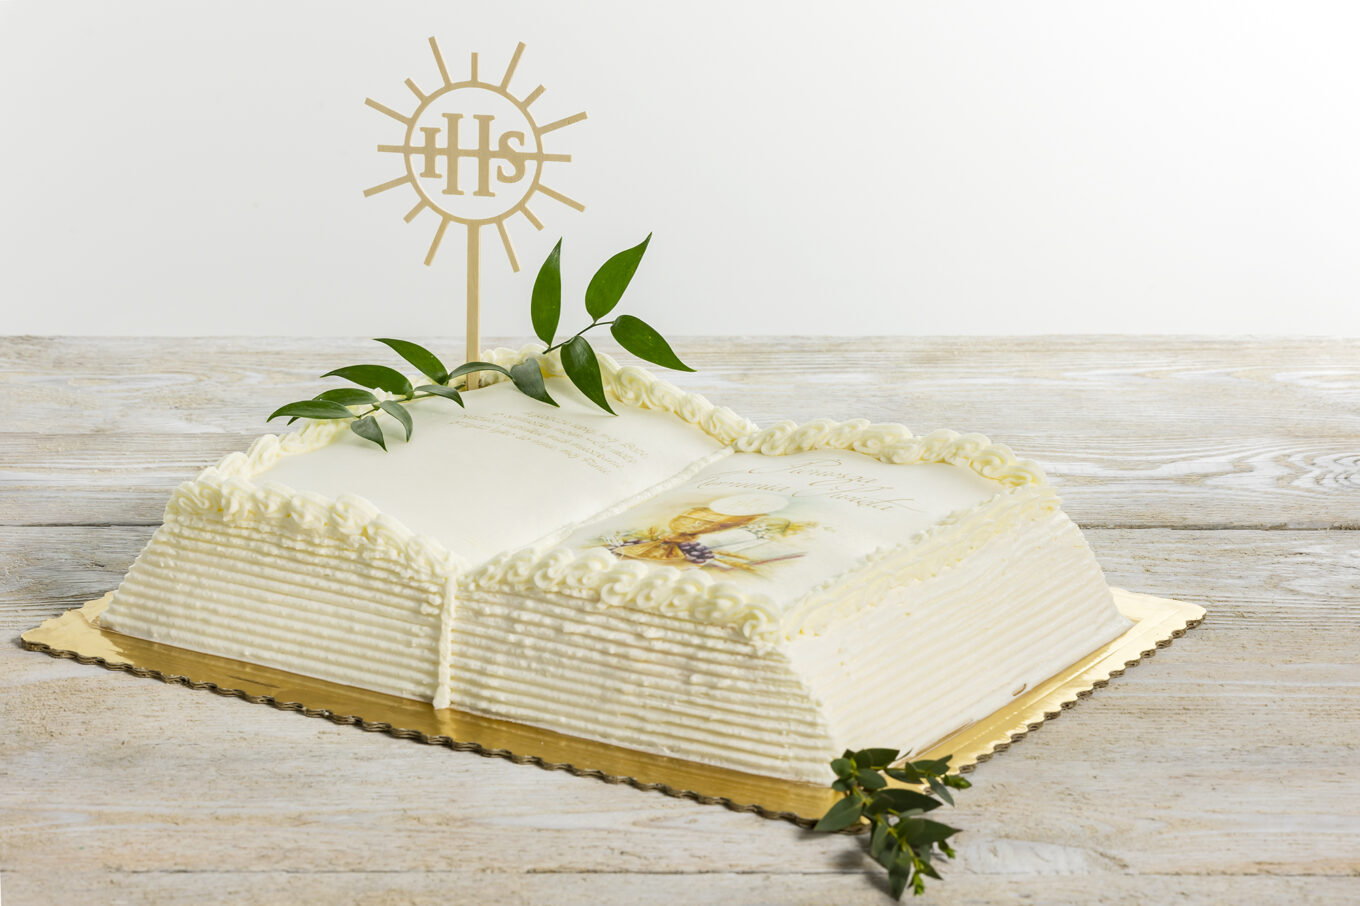 libro torta per la comunione con topper Cukiernia Jacek Placek è sinonimo del gusto delle torte fatte in casa a base di prodotti naturali.